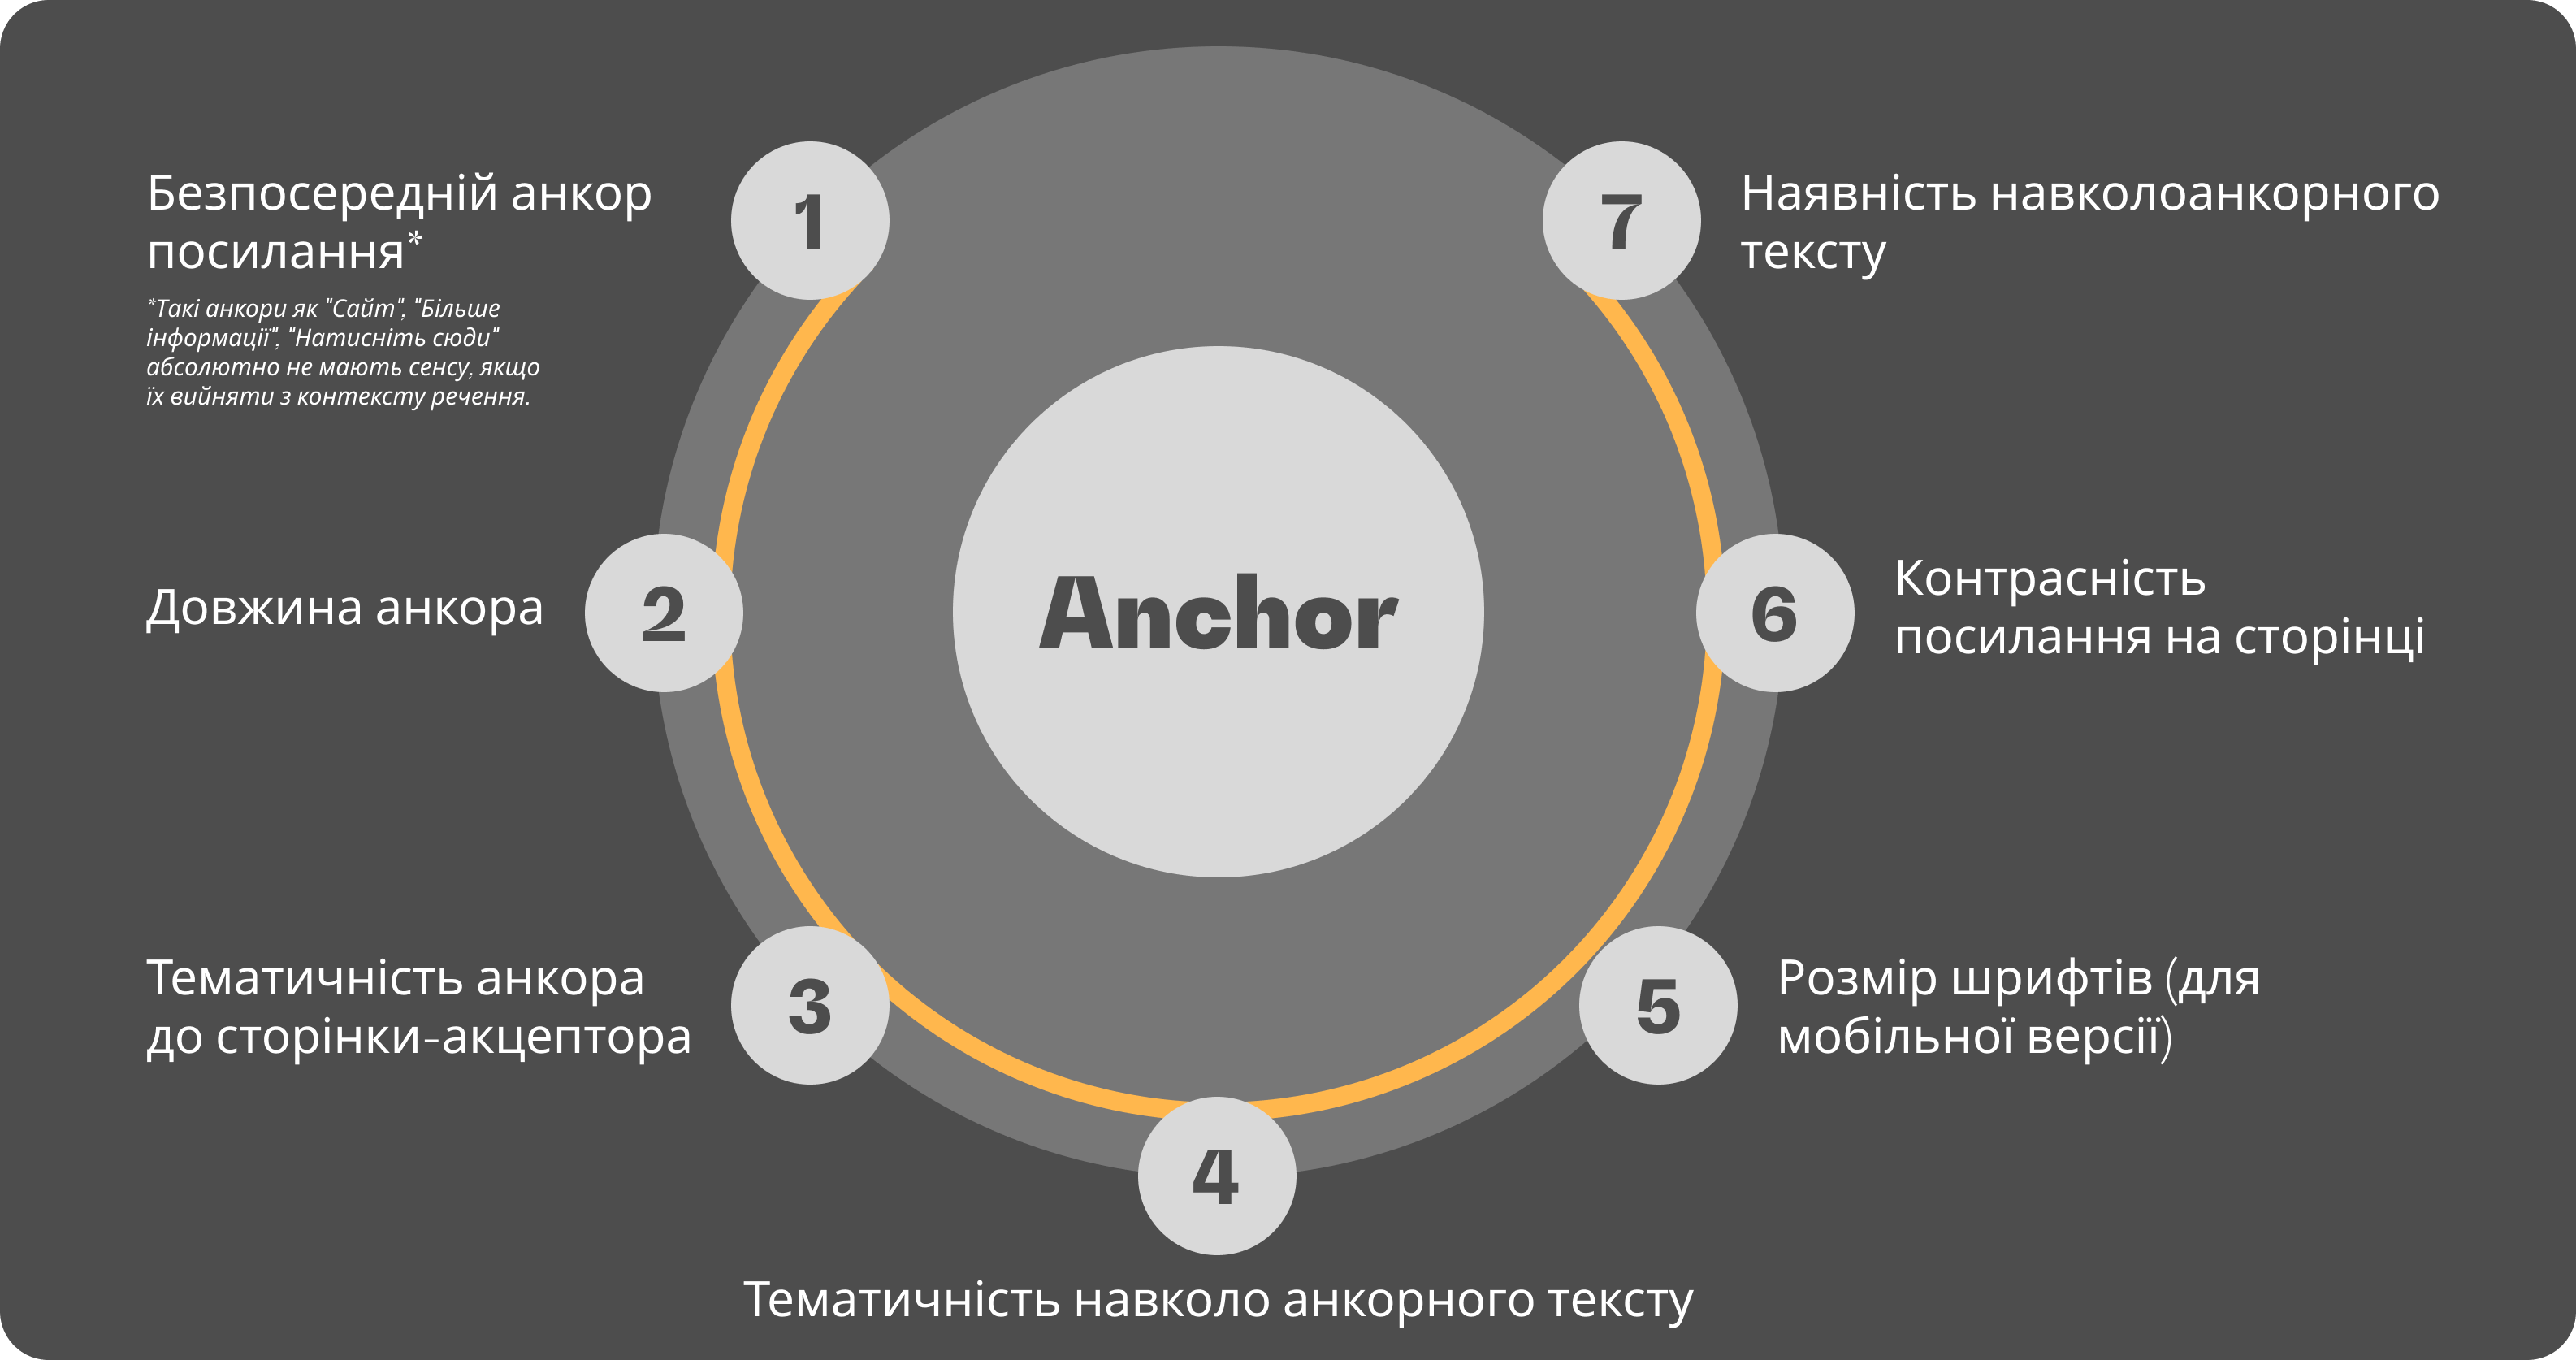 Anchor - Основний показник внутрішнього посилання, який може бути врахований для ефективної перелінковки, схема - Zeeks